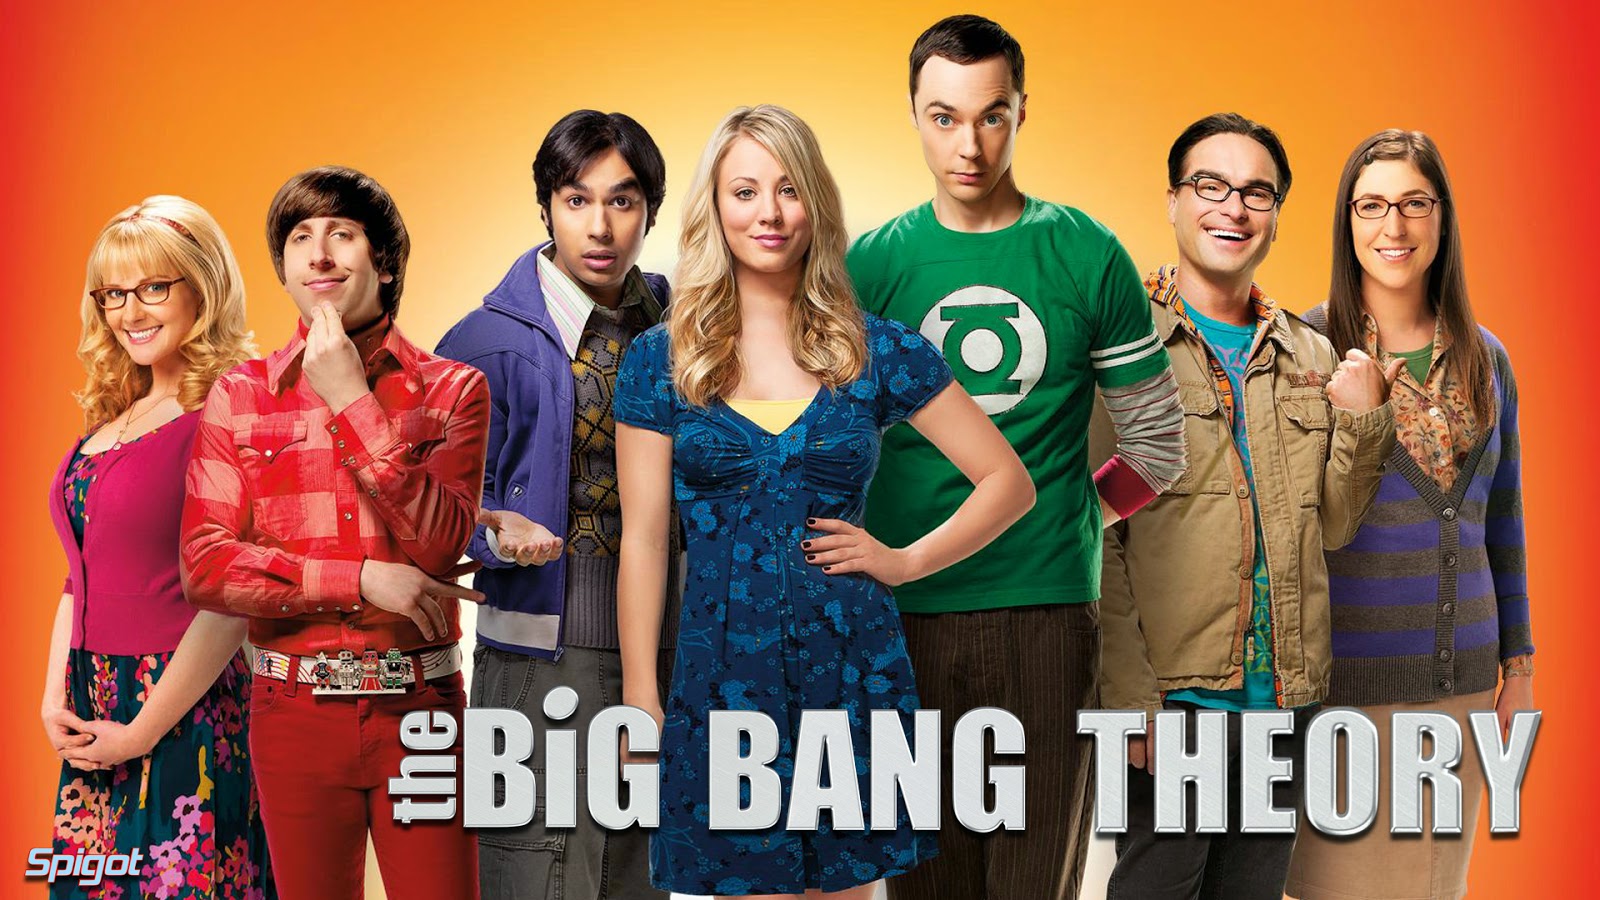 Αναβάλλονται τα γυρίσματα του 8ου κύκλου του “The Big Bang Theory” - Φωτογραφία 1